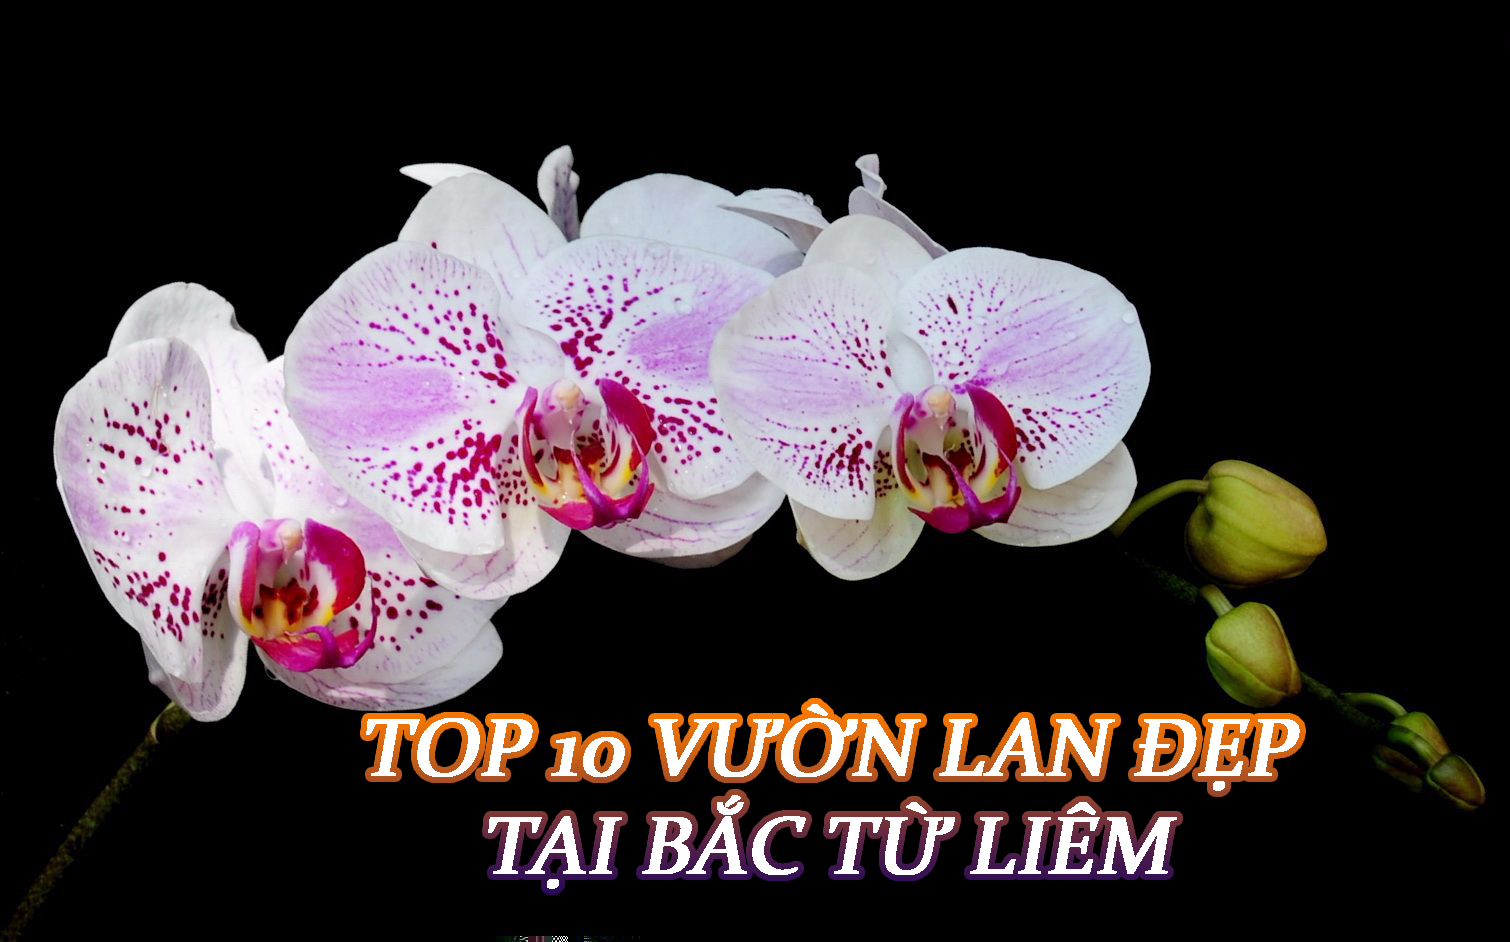 Top 10 vườn lan đẹp tại Bắc Từ Liêm – Hà Nội